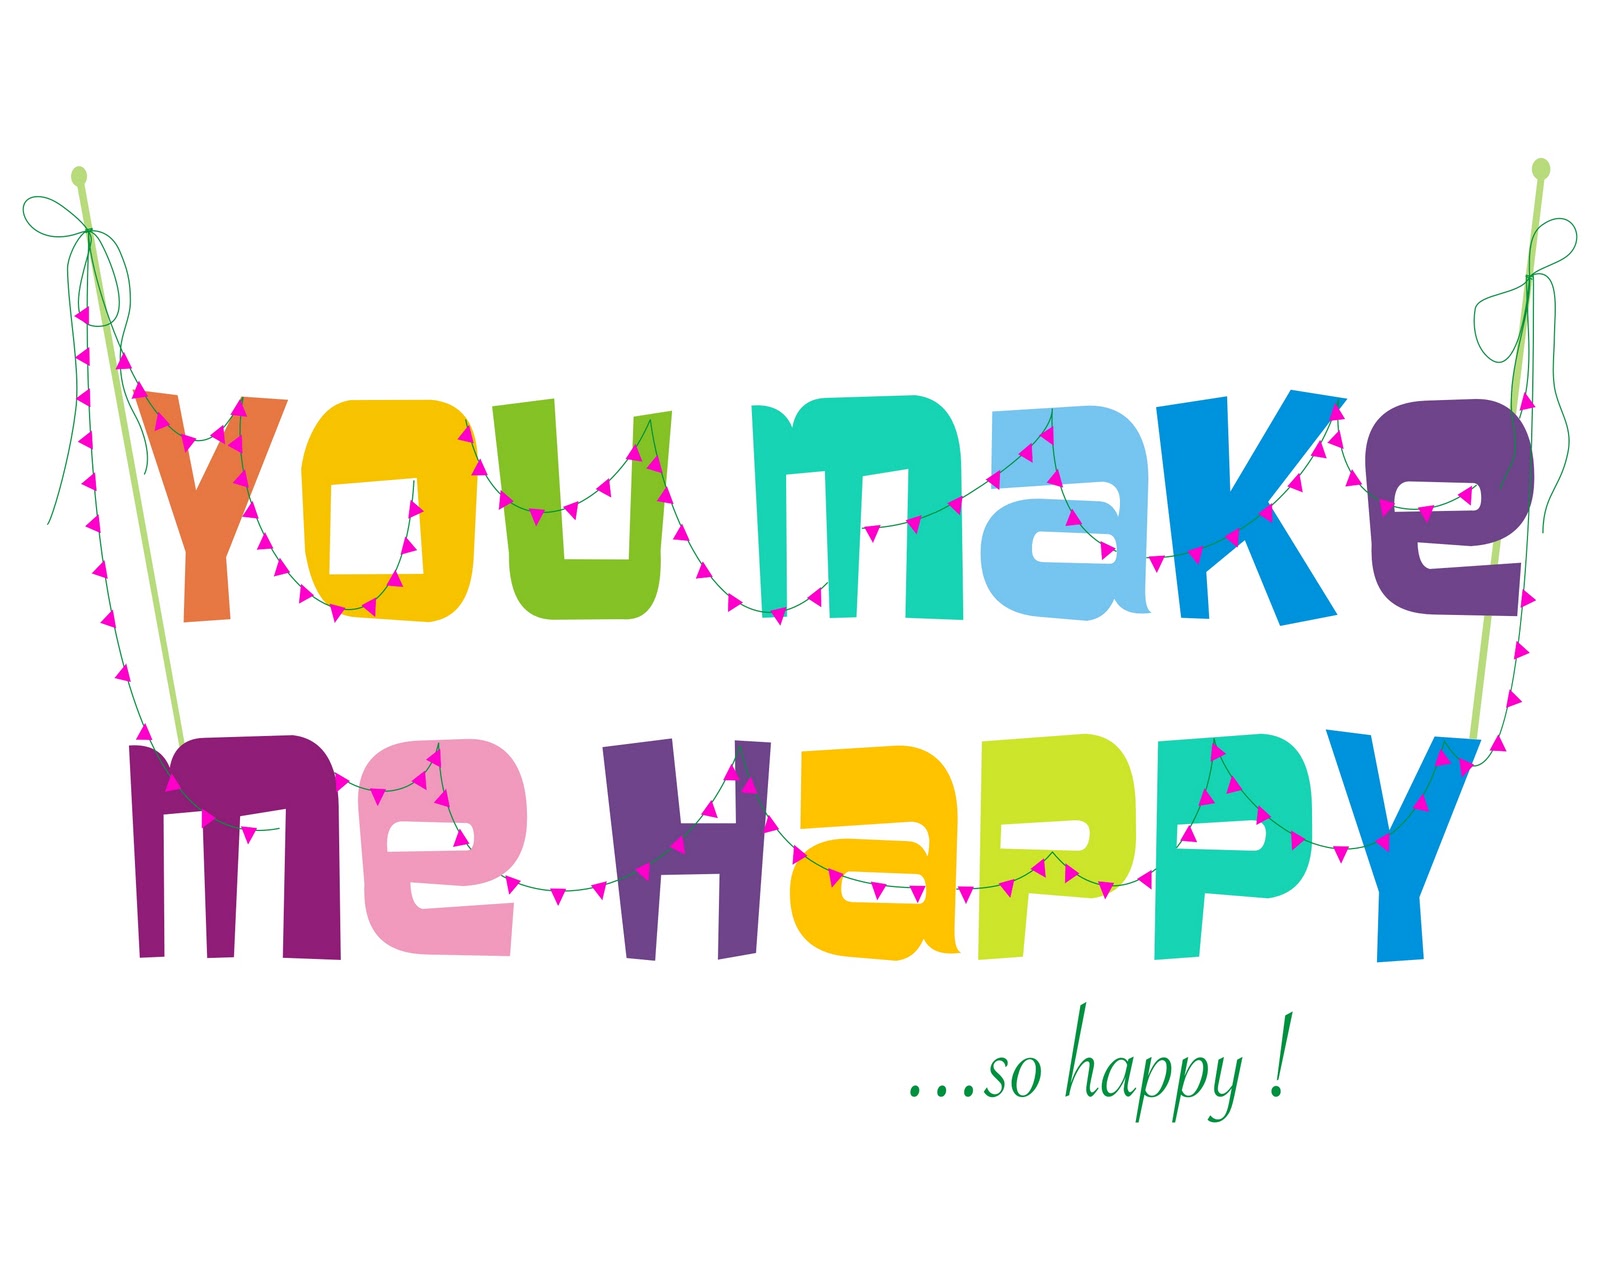 Be happy com. You make me Happy. Картину в i am Happy. I am Happy картинки. You make me Happy картинки.